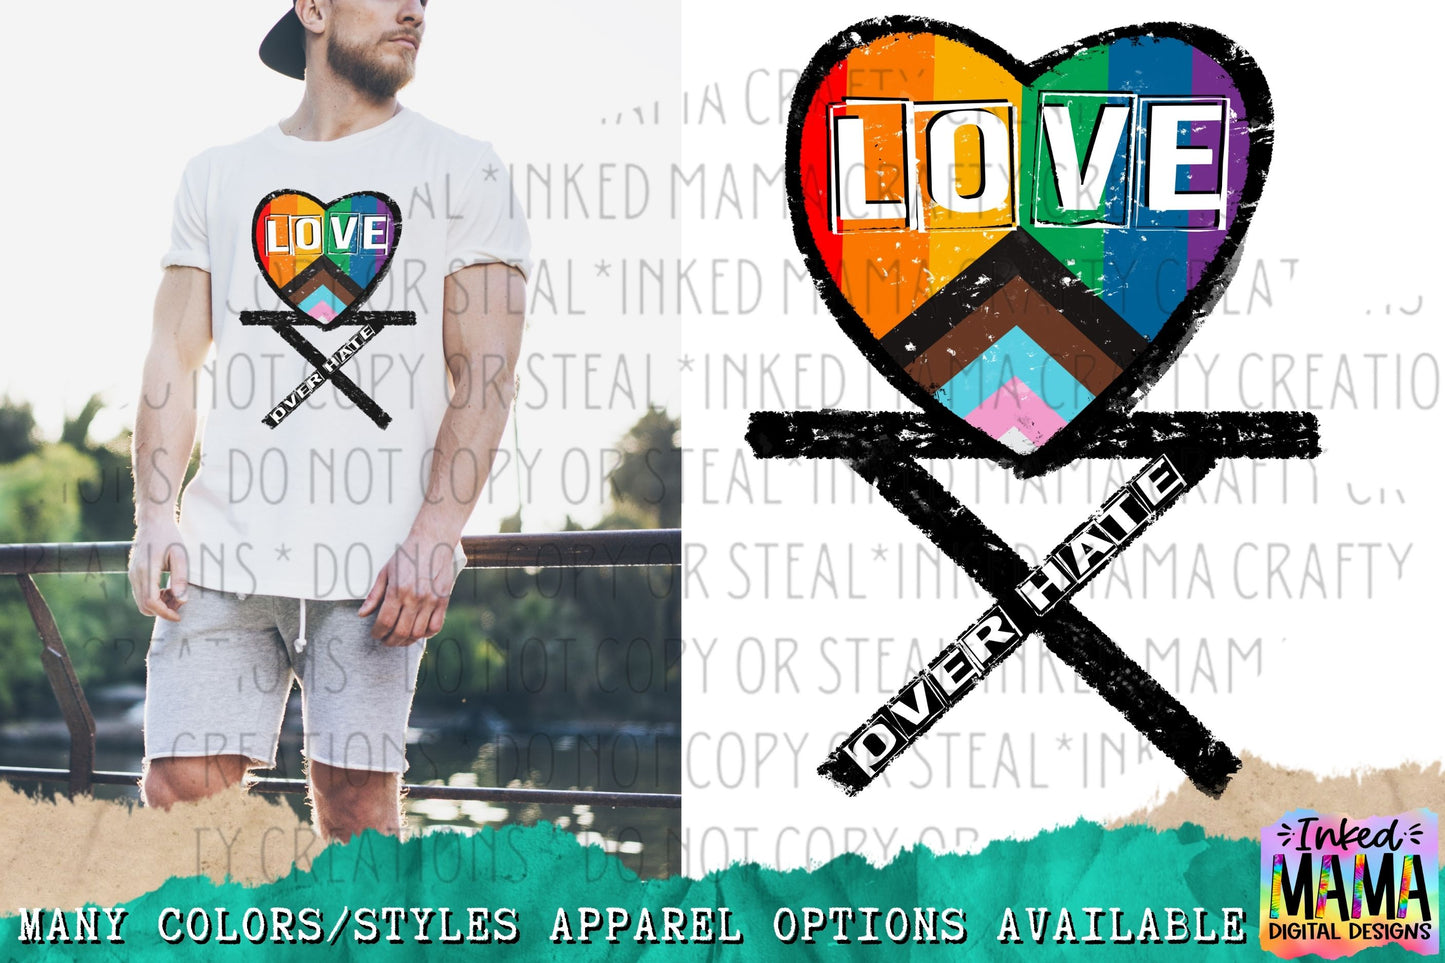 Love Over Hate - LGBTQIA+ PRIDE Apparel